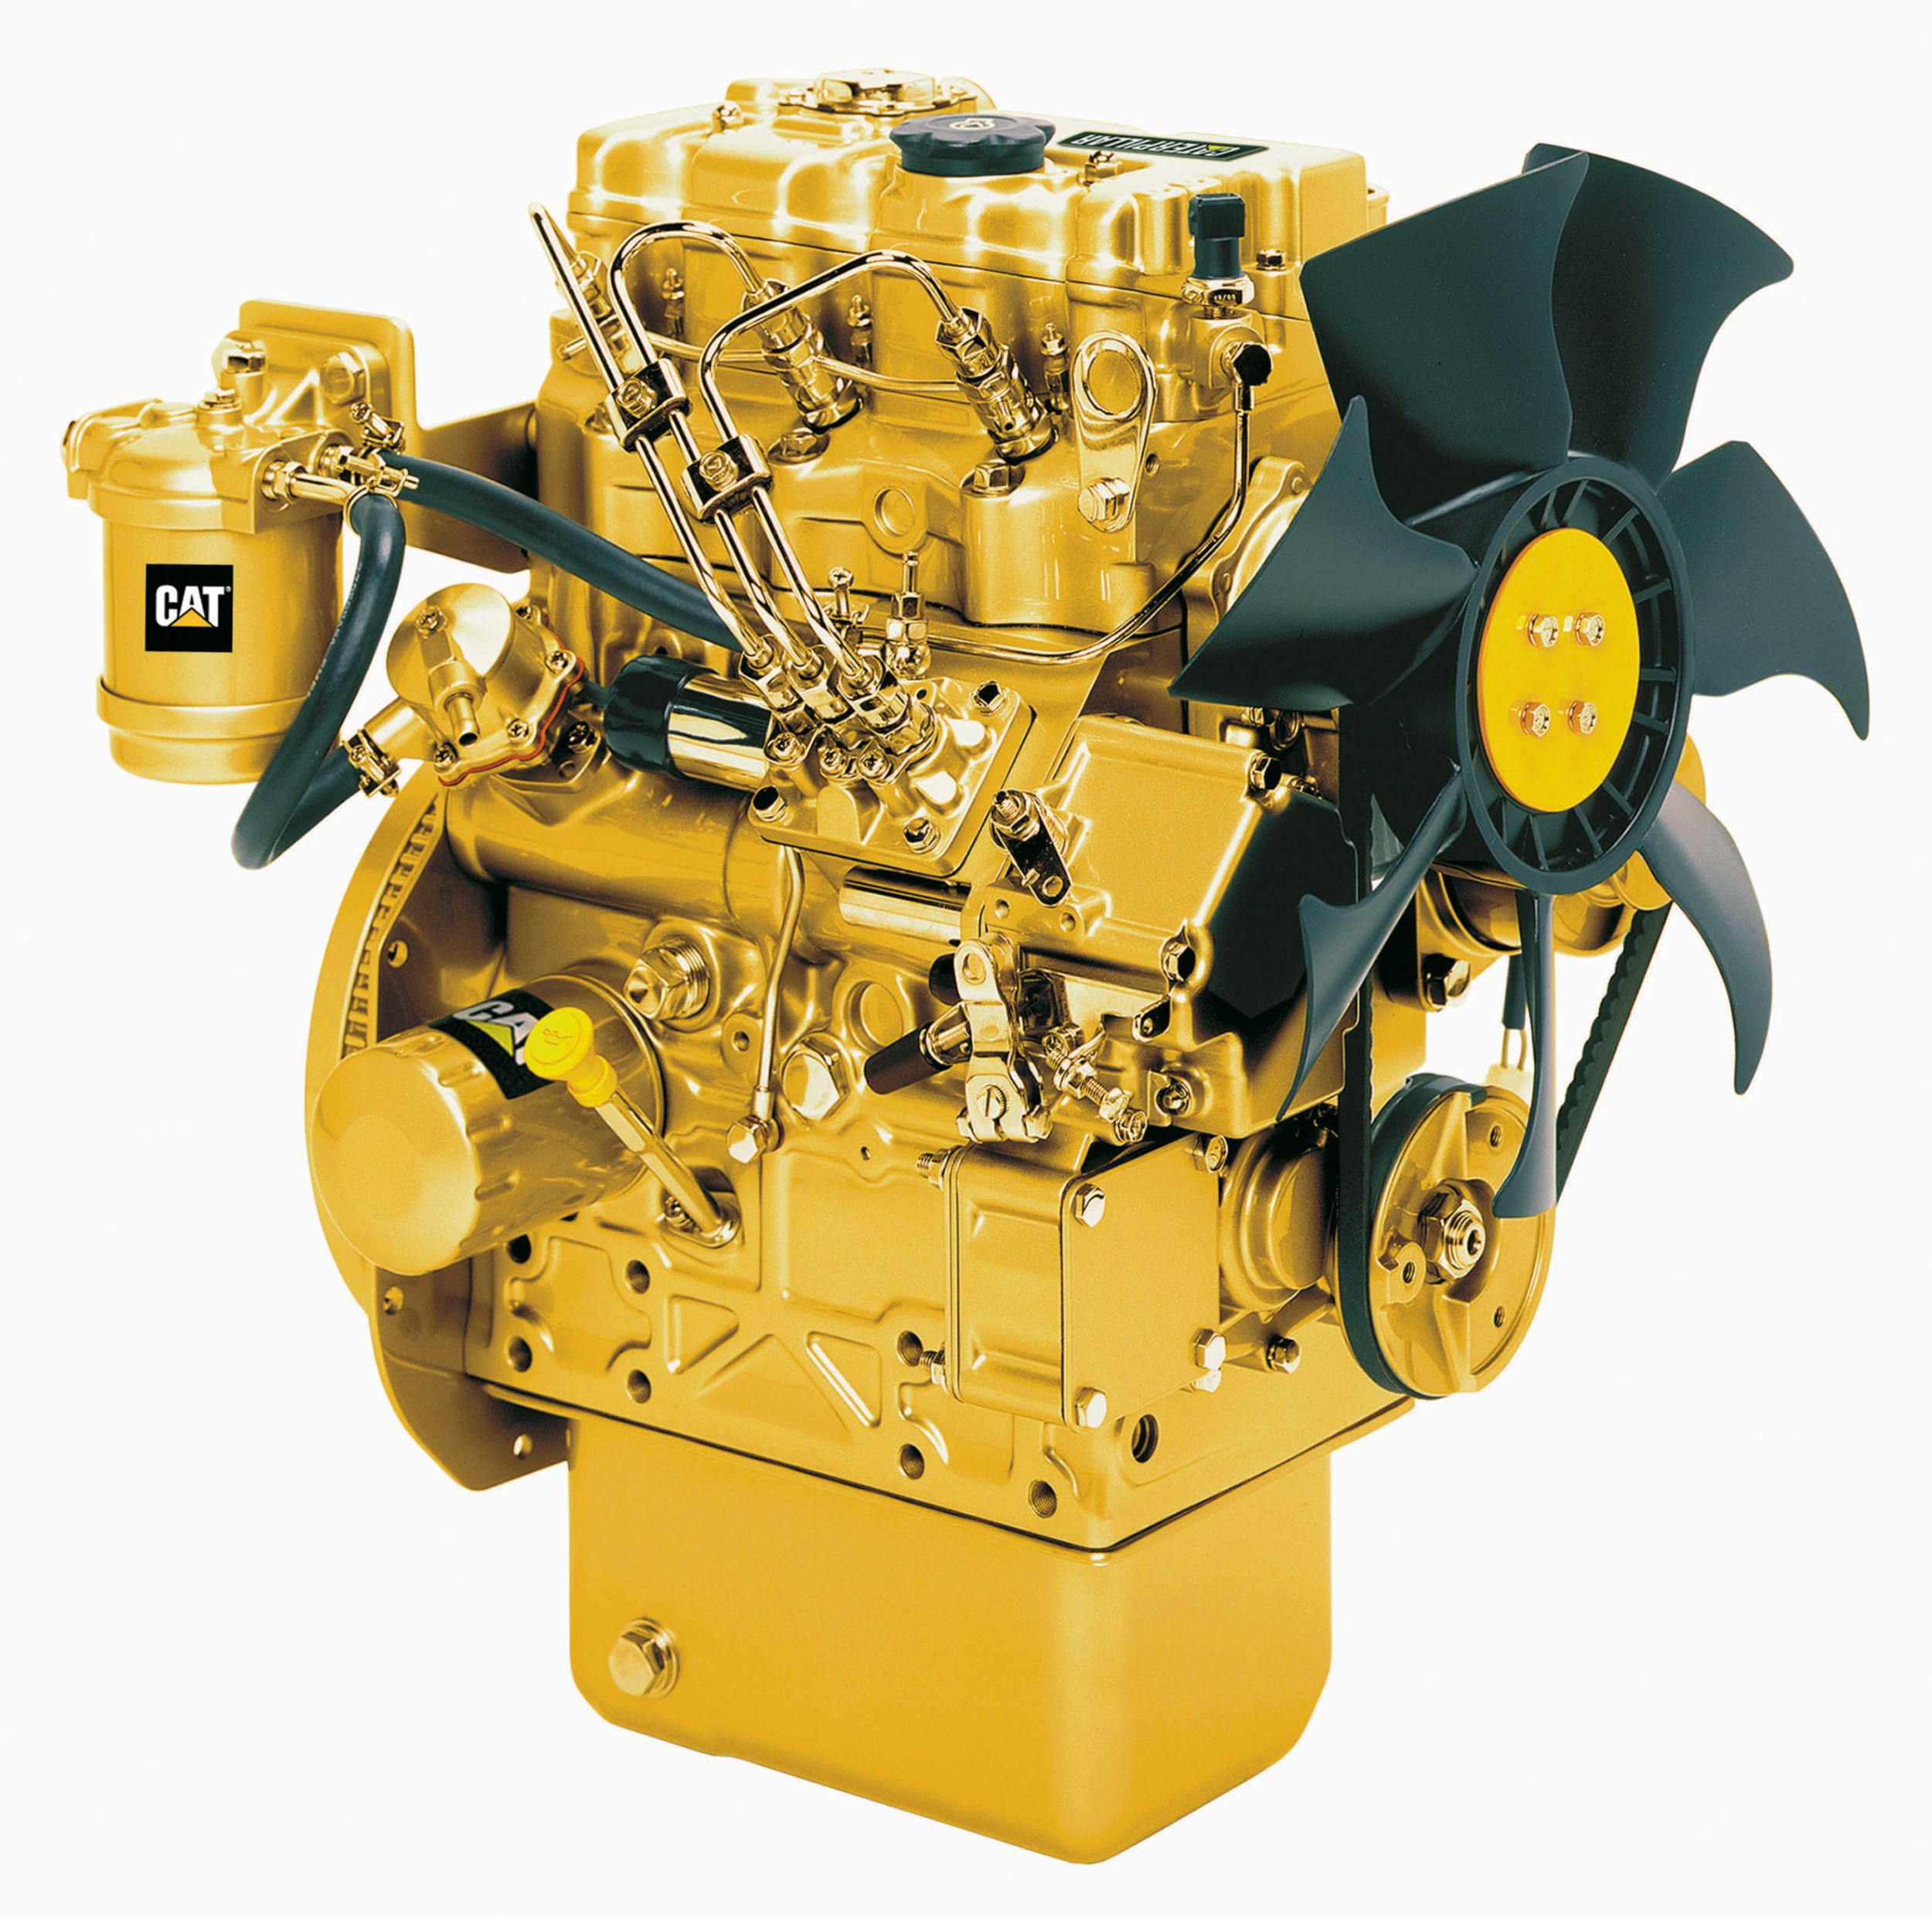 Cat®-Dieselmotor C1.1